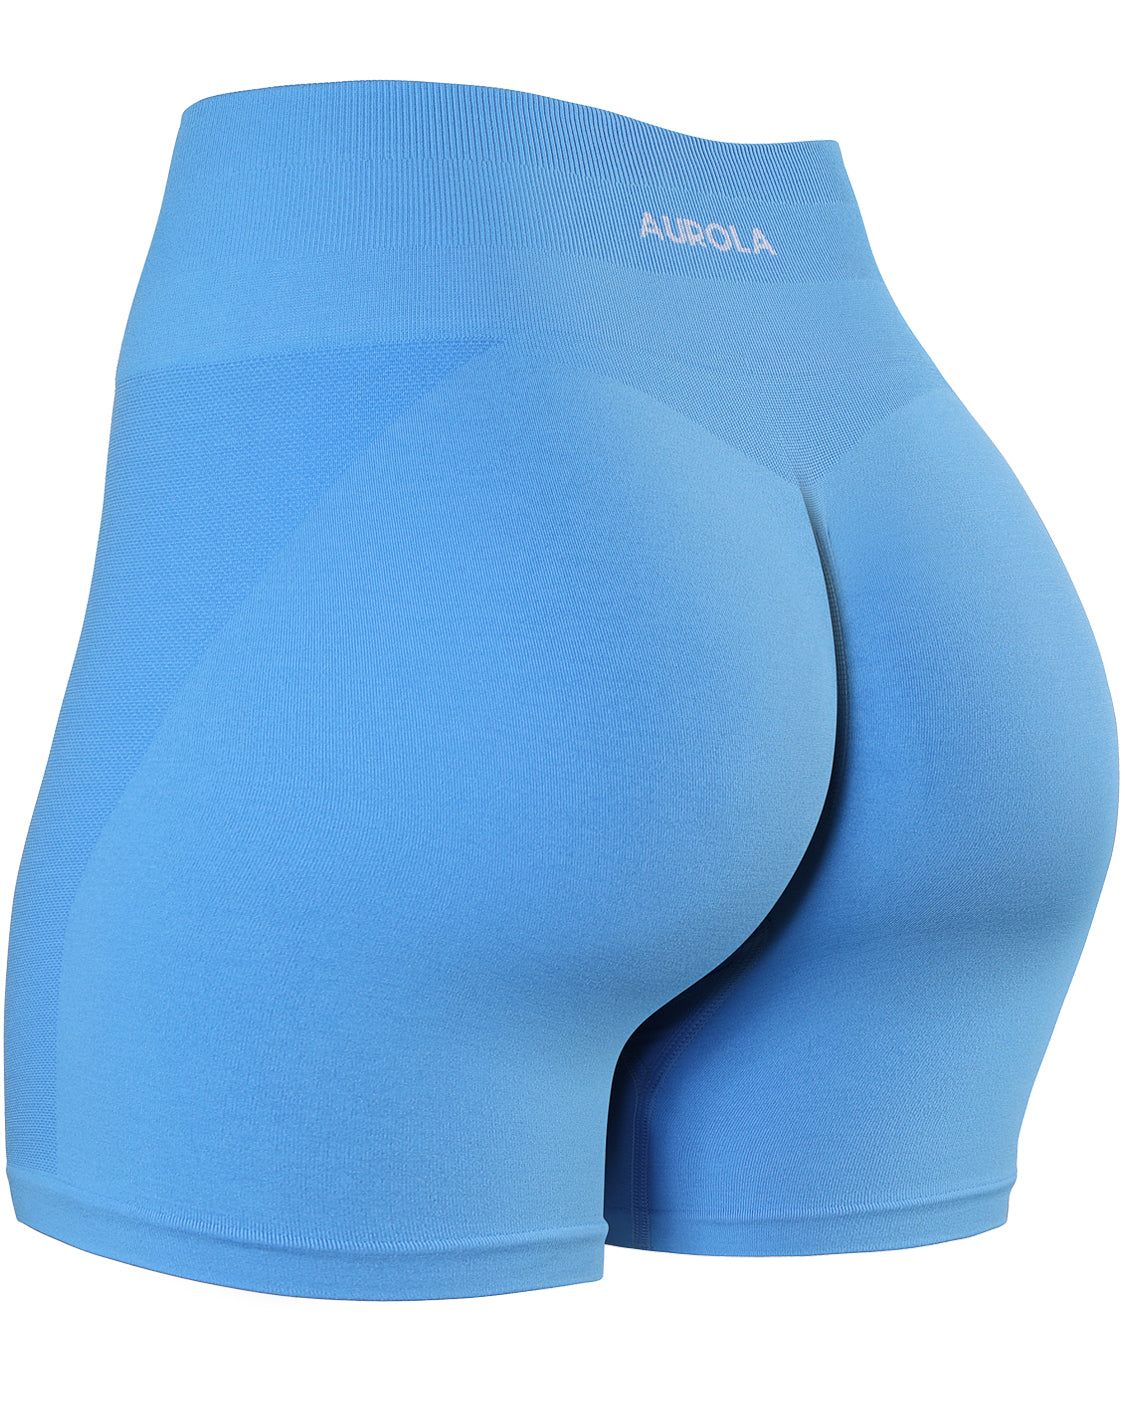 AUROLA Intensify Workout Shorts, Aurola Workout Shorts Size Small